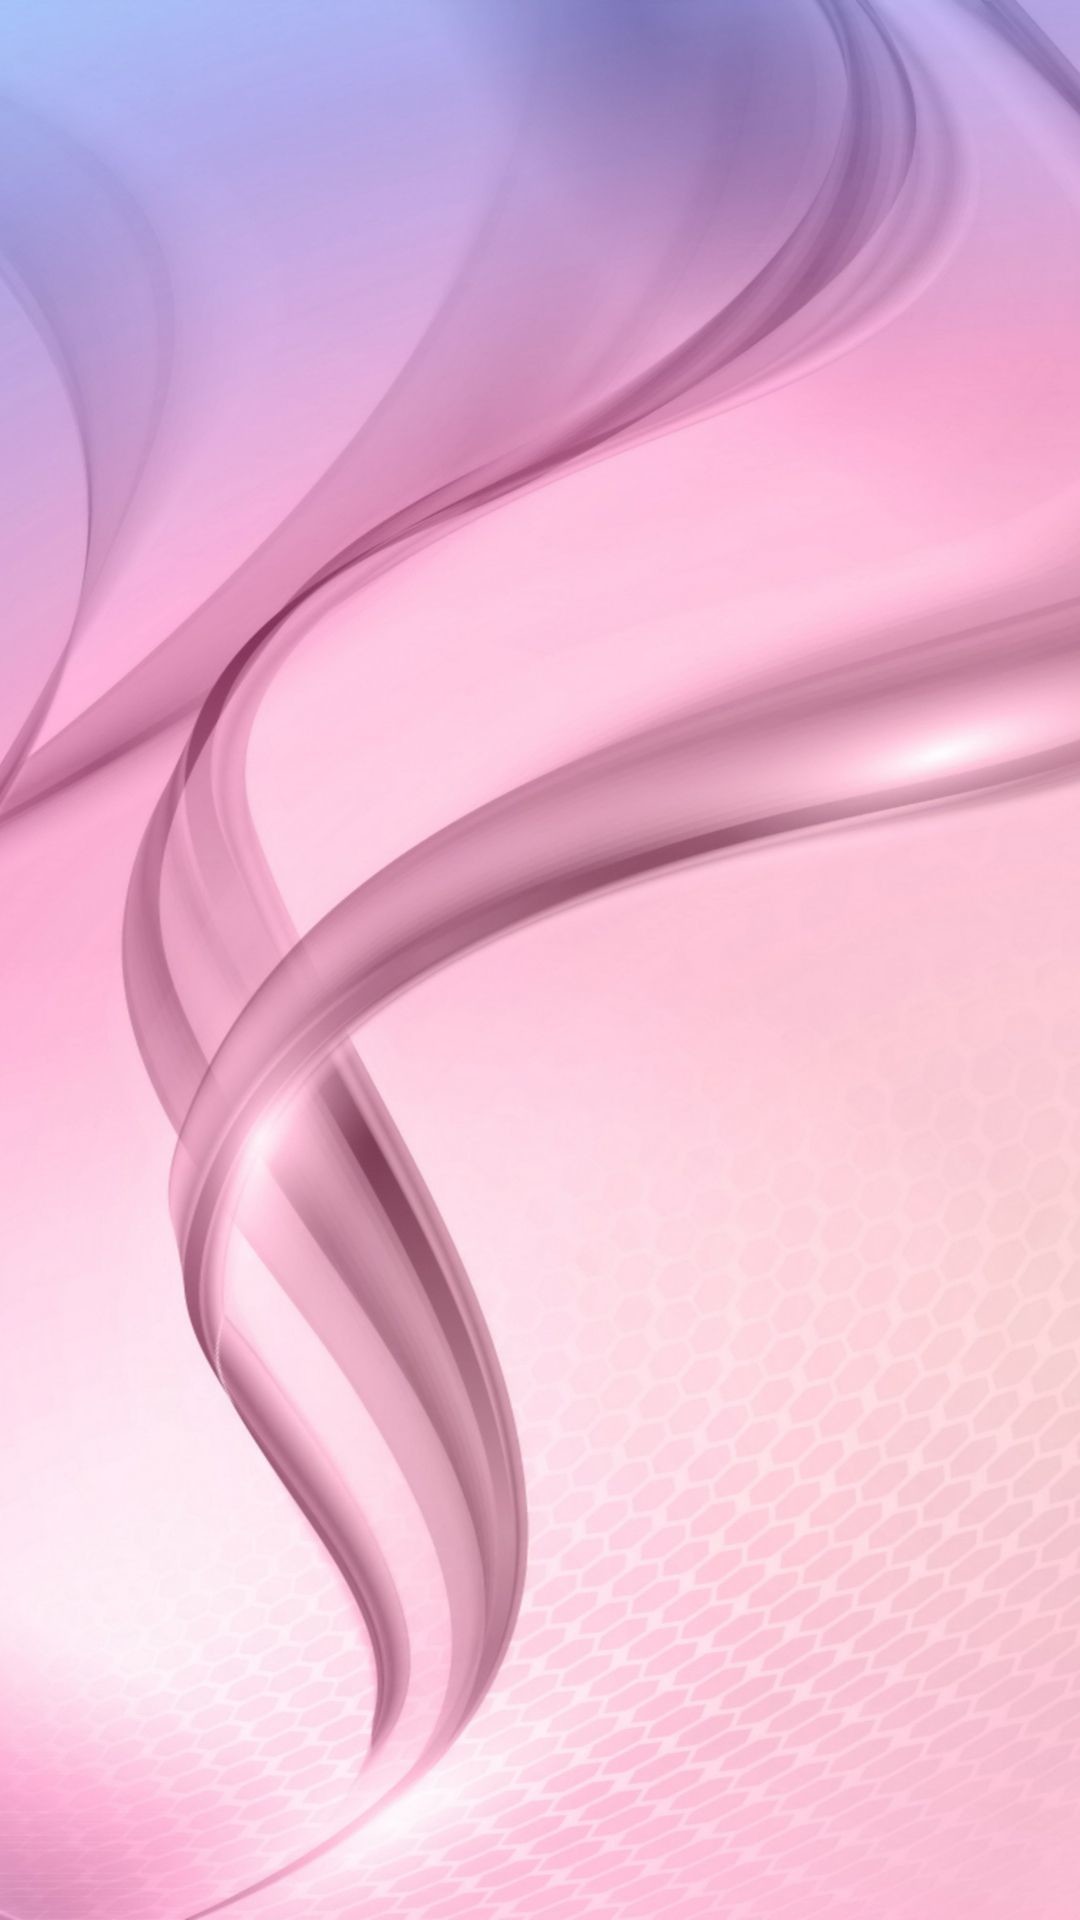 1080x1920, Galaxy Wallpaper - Pink Wallpaper Samsung , HD Wallpaper & Backgrounds